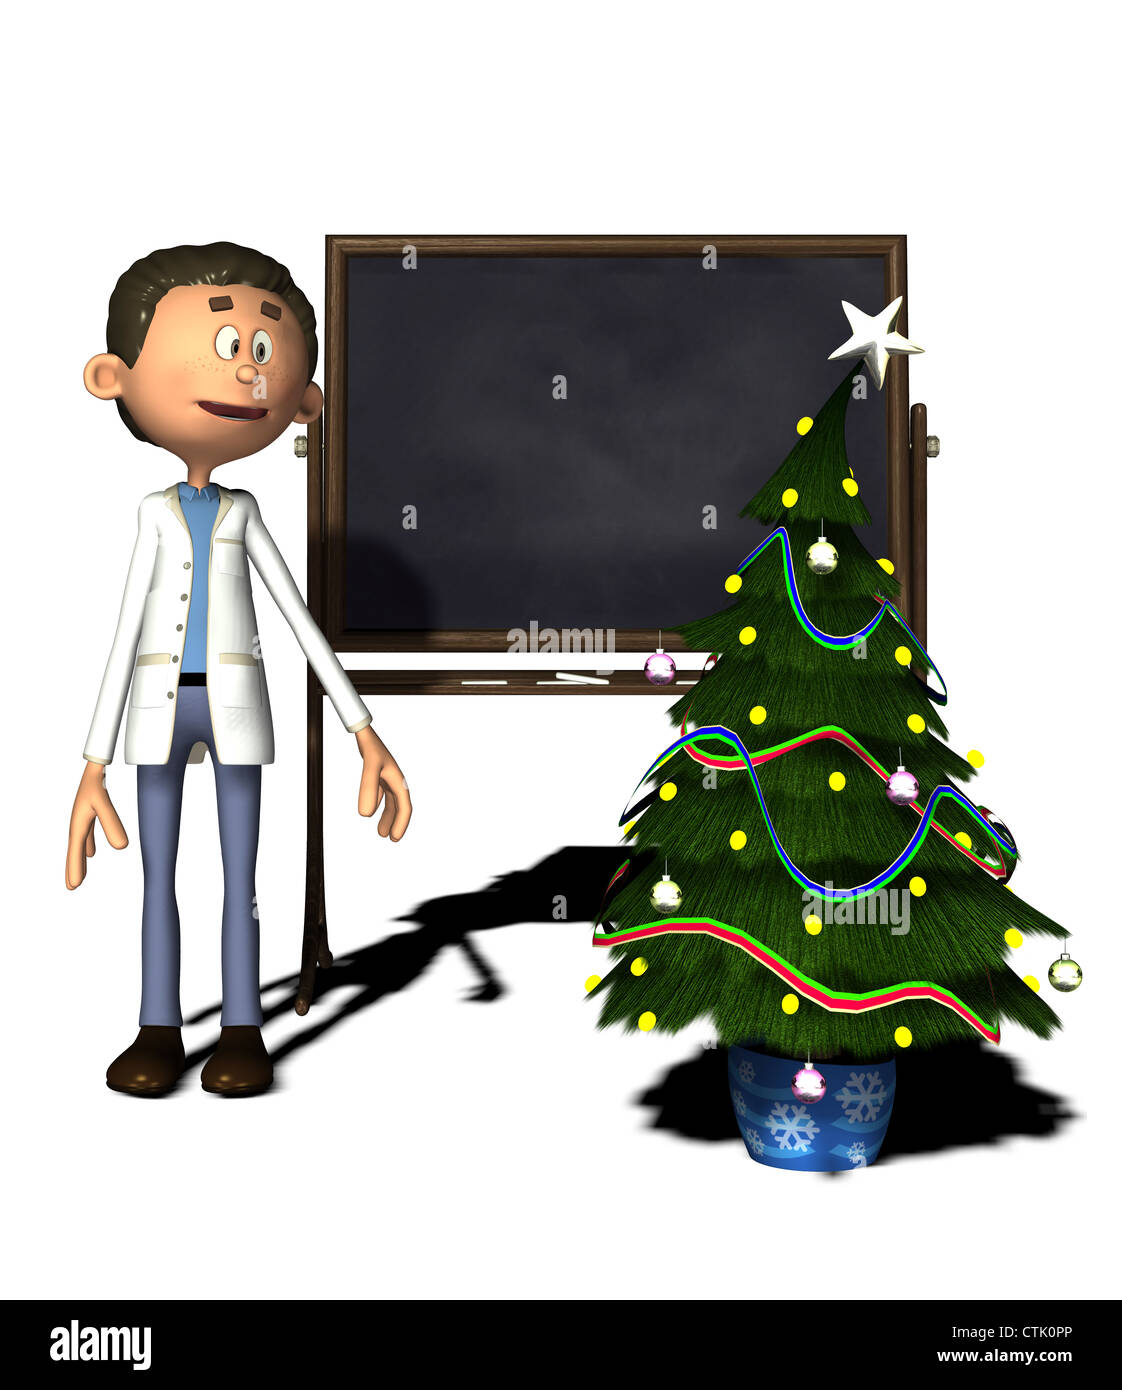 Figura del fumetto farmacia con bordo e albero di Natale Foto Stock